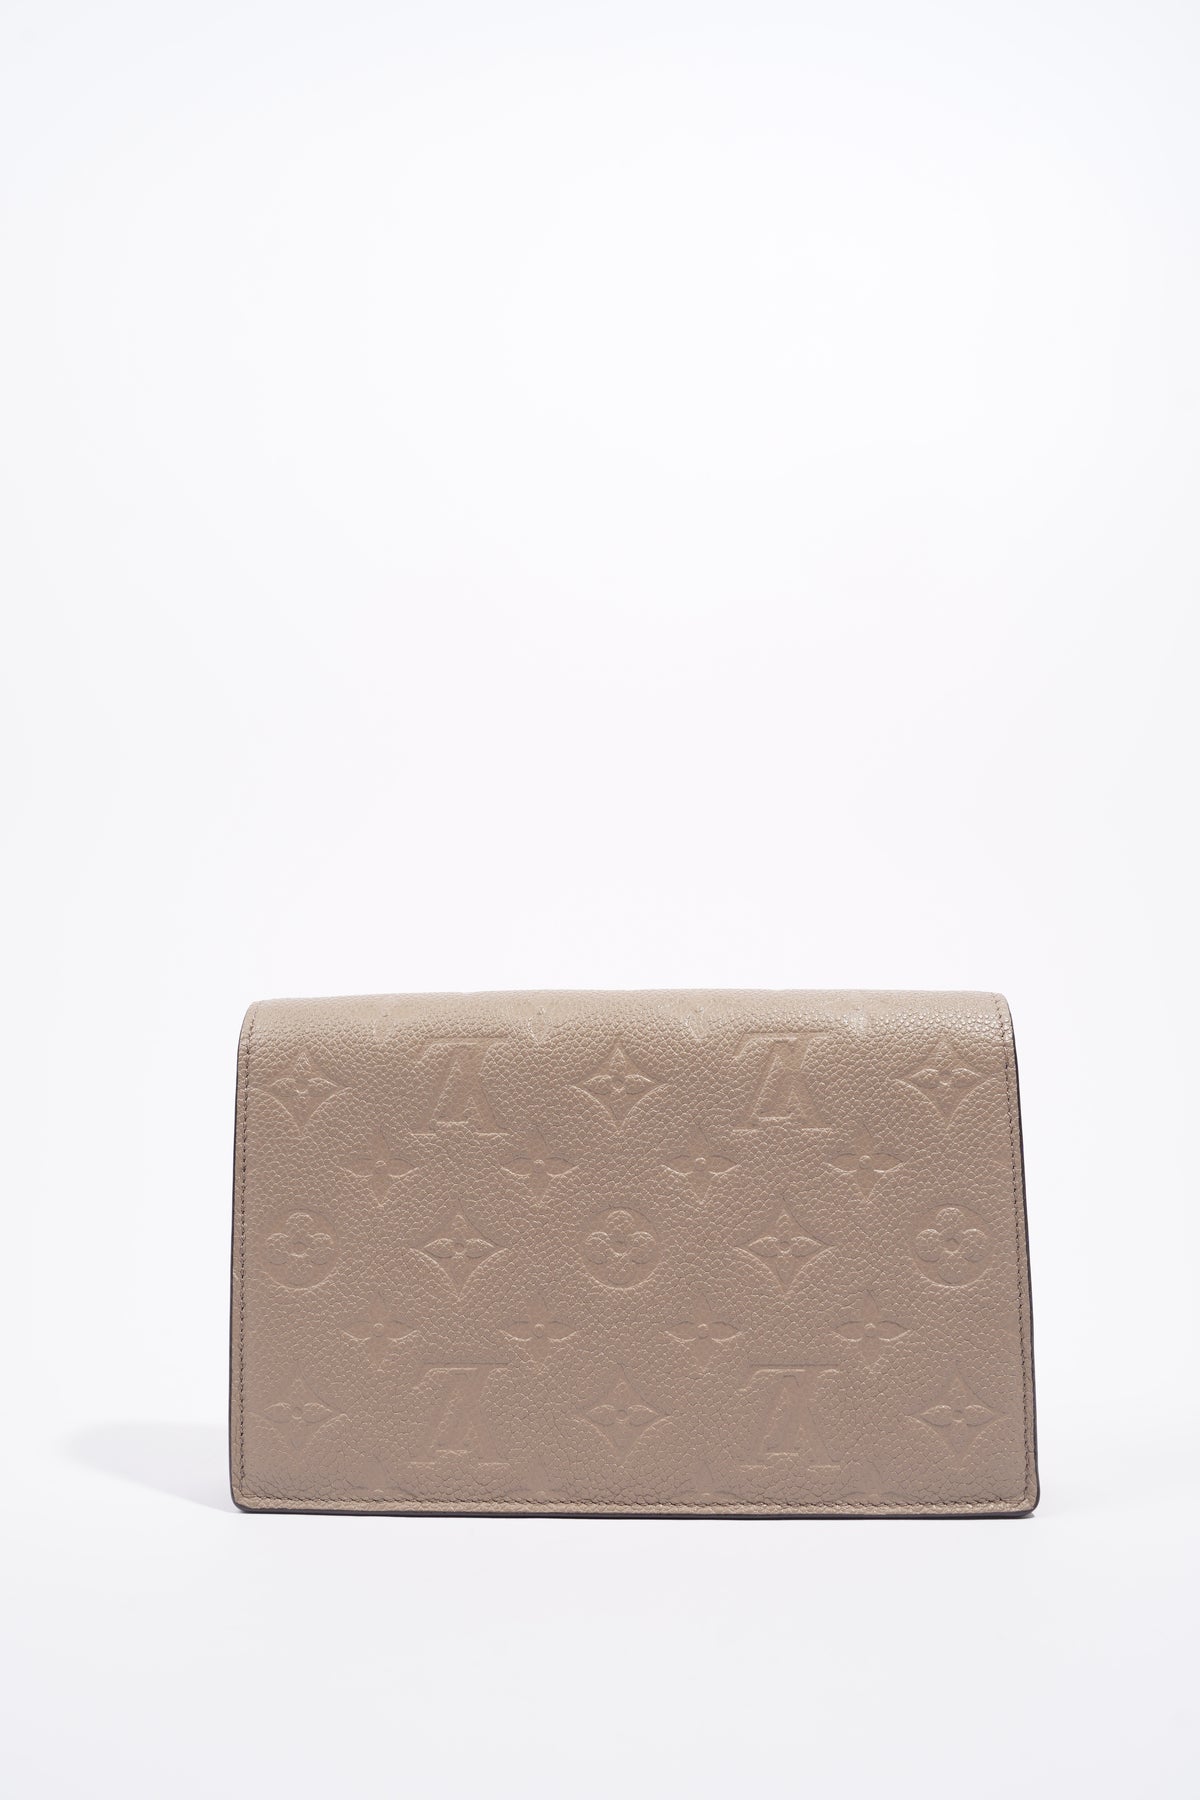 Louis Vuitton Vavin Chain Wallet Monogram Empreinte Leather Pink 2251541